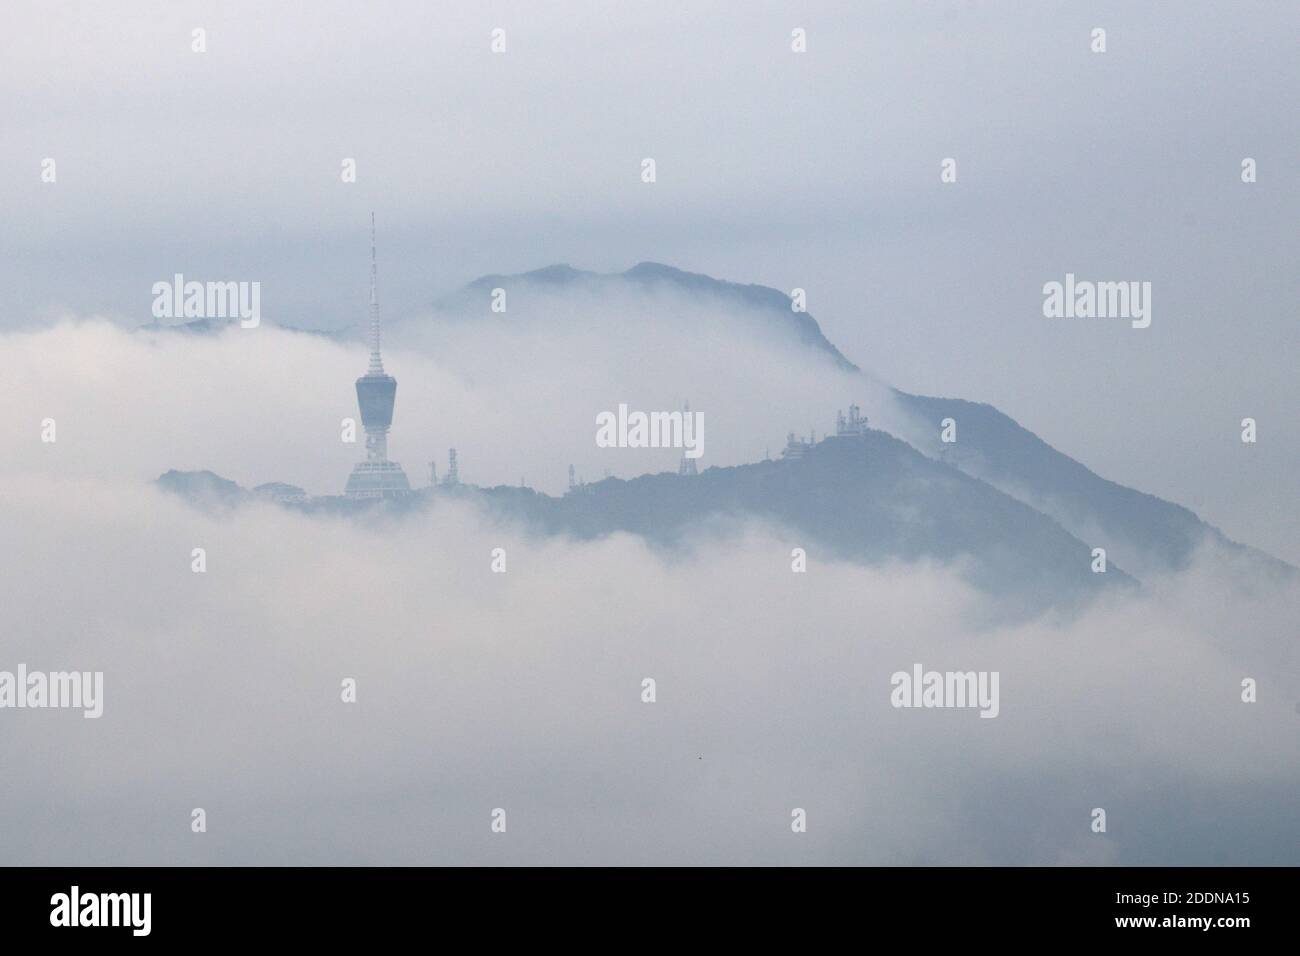 Nuages à travers le sommet de ng Tung Shan, « China Mountain », Shenzhen, province de Guangdong, Chine 23 avril 2020, photographié de Hong Kong Banque D'Images